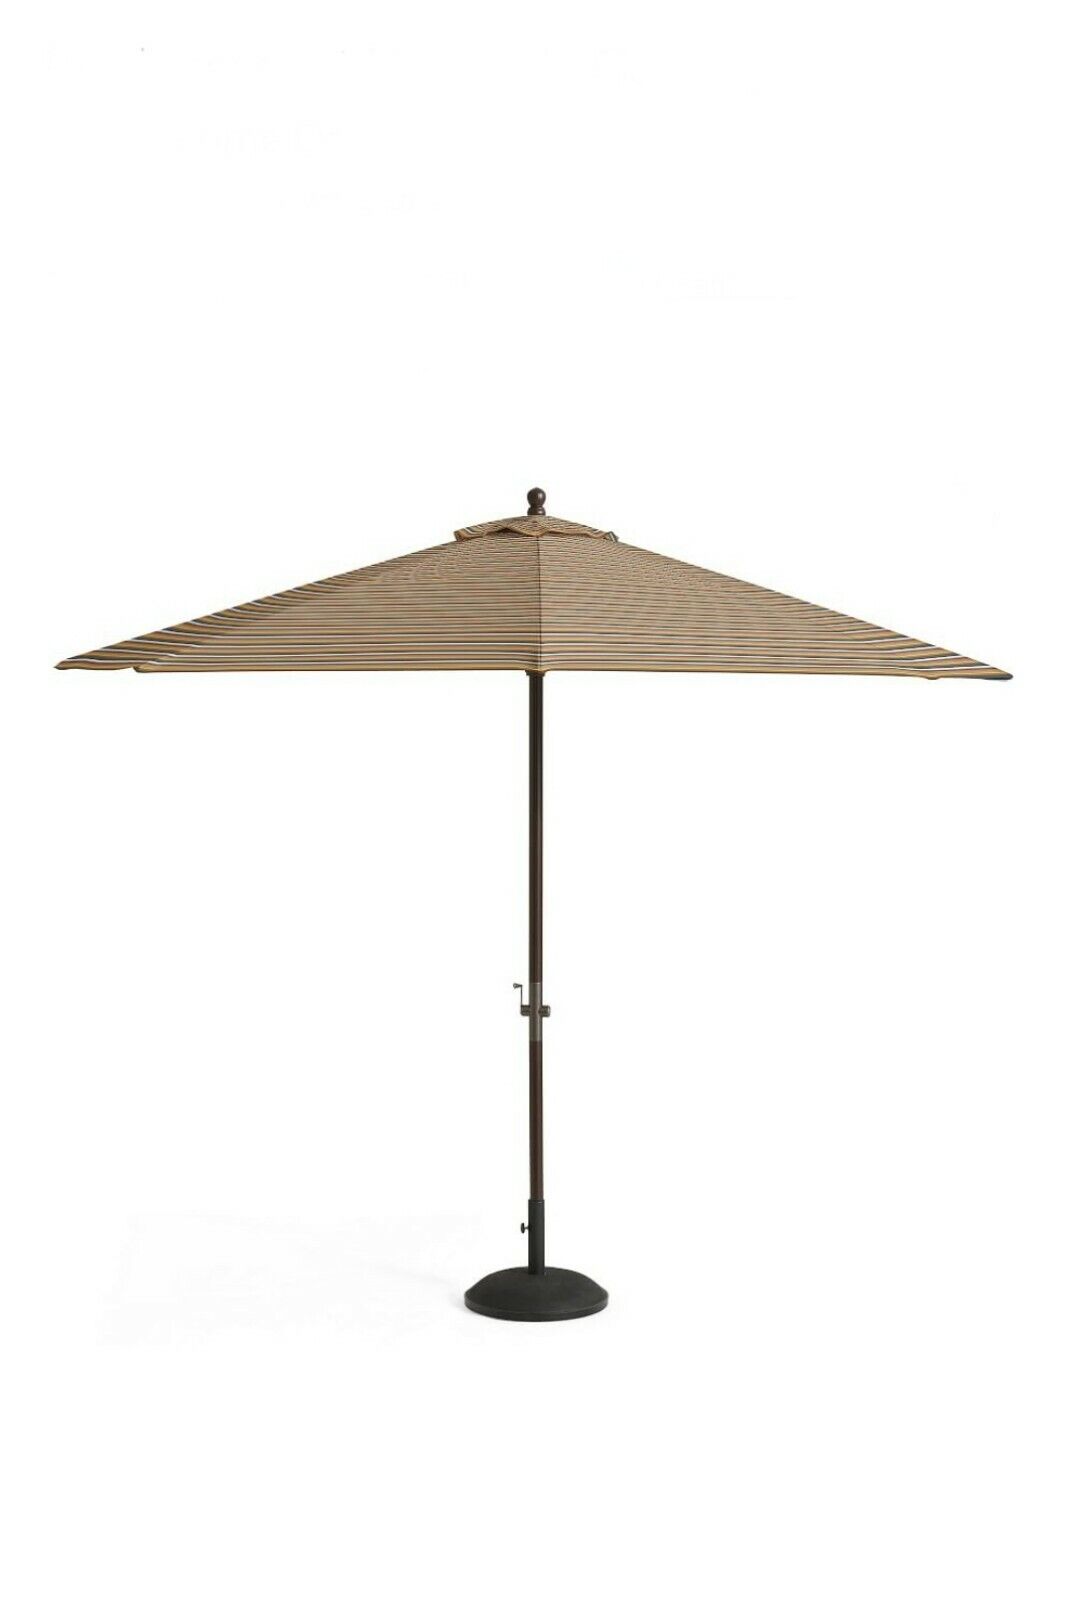 Pottery Barn Sunbrella Market Umbrella Canopy 11ft. Newport Multi Stripe 